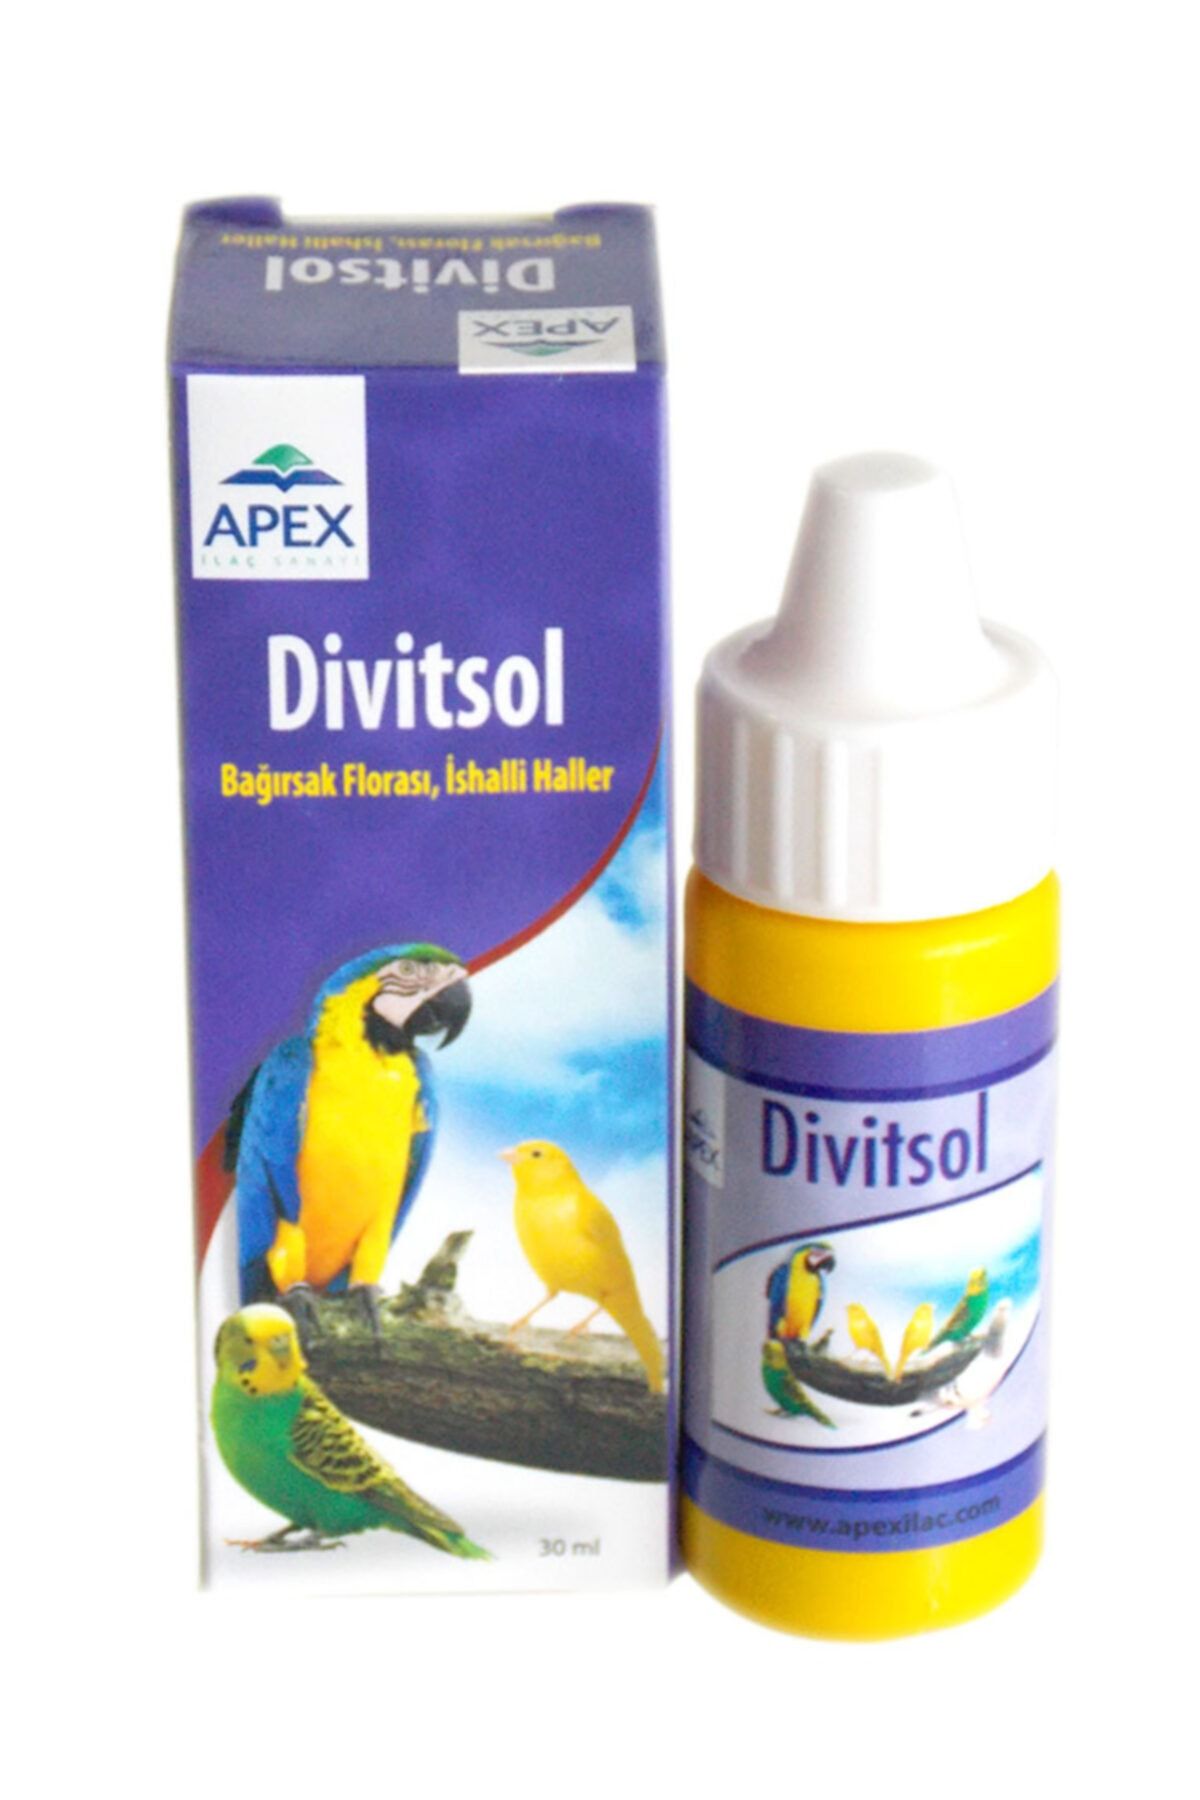 Genel Markalar Adipa Eg Güvercin - Apex Divitsol Bağırsak Florası (ishal Için)